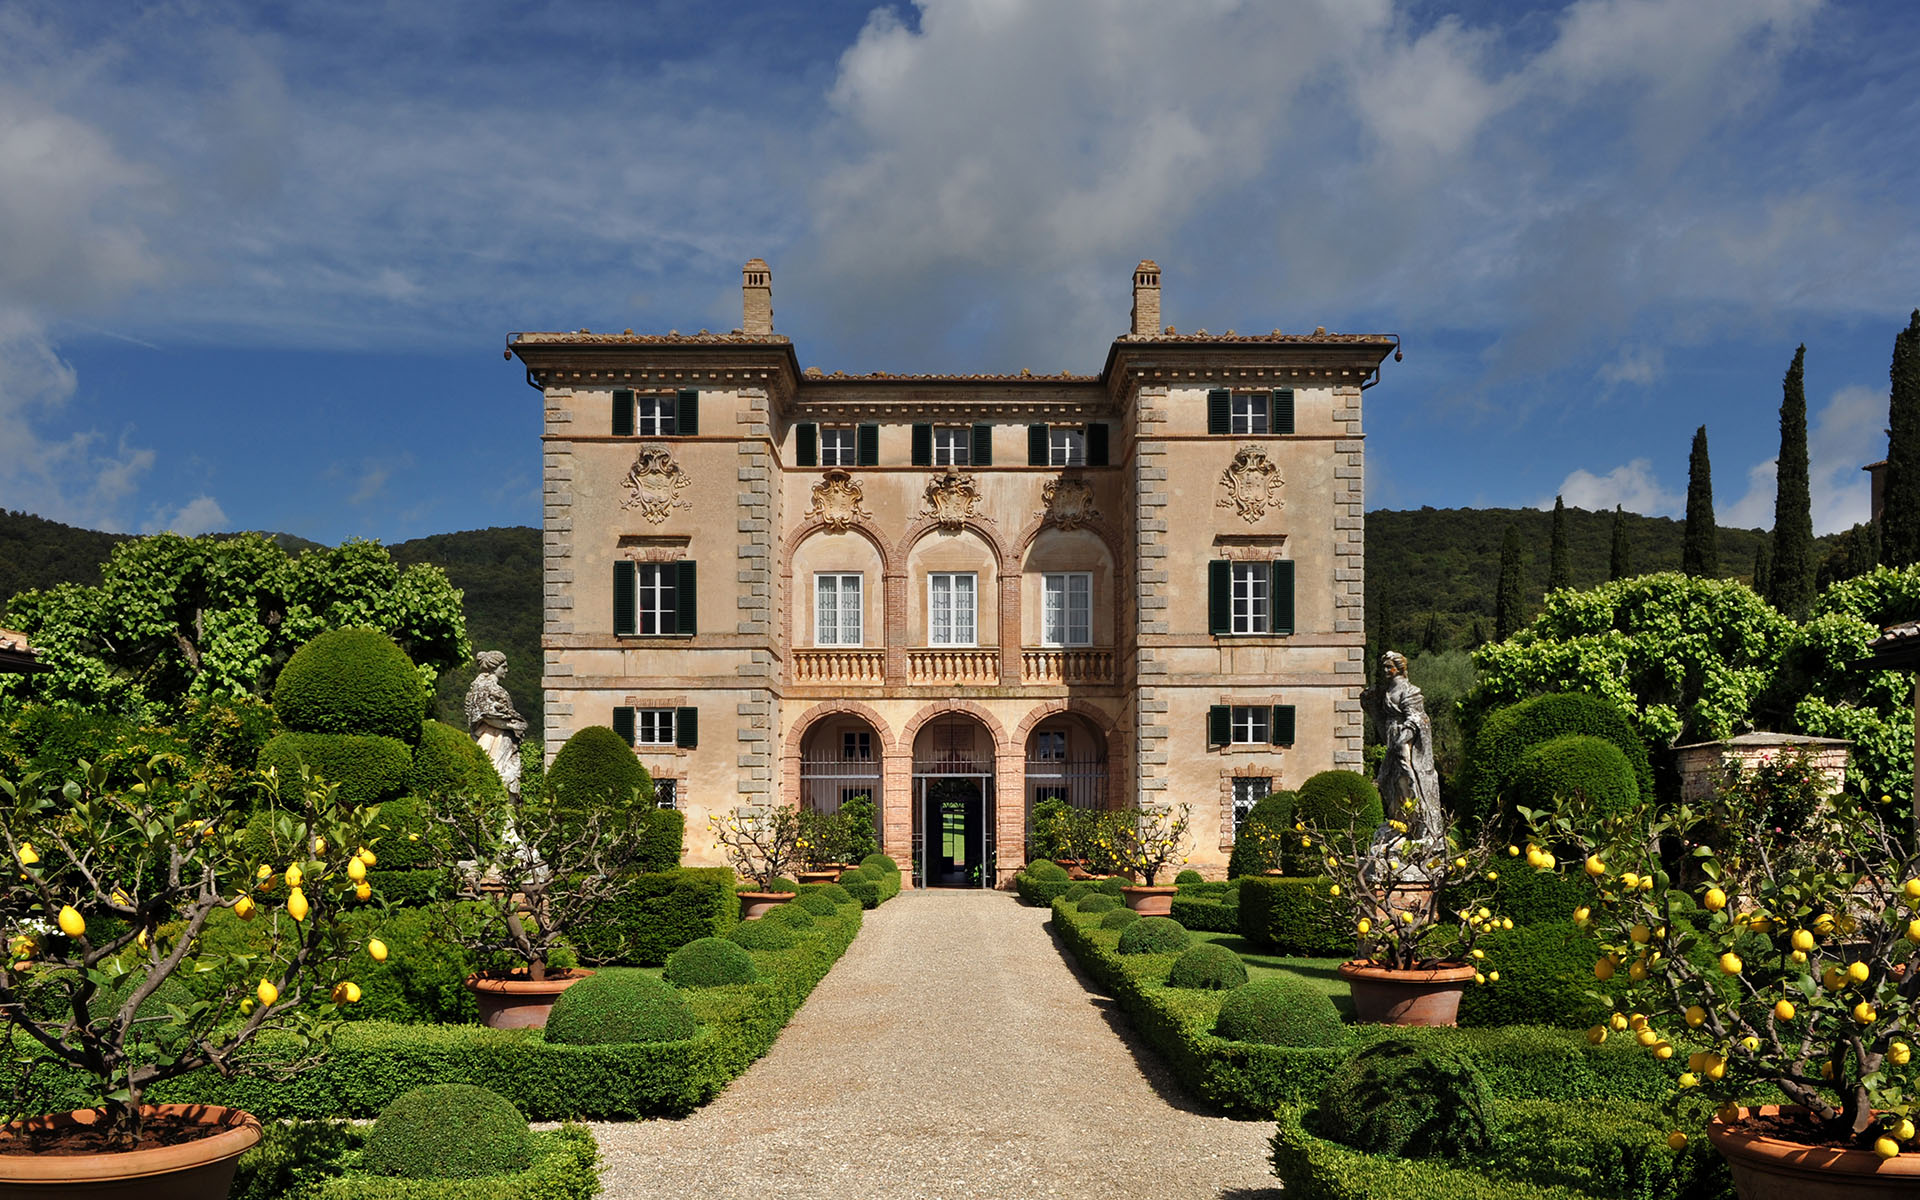 Villa Cetinale, Tuscany